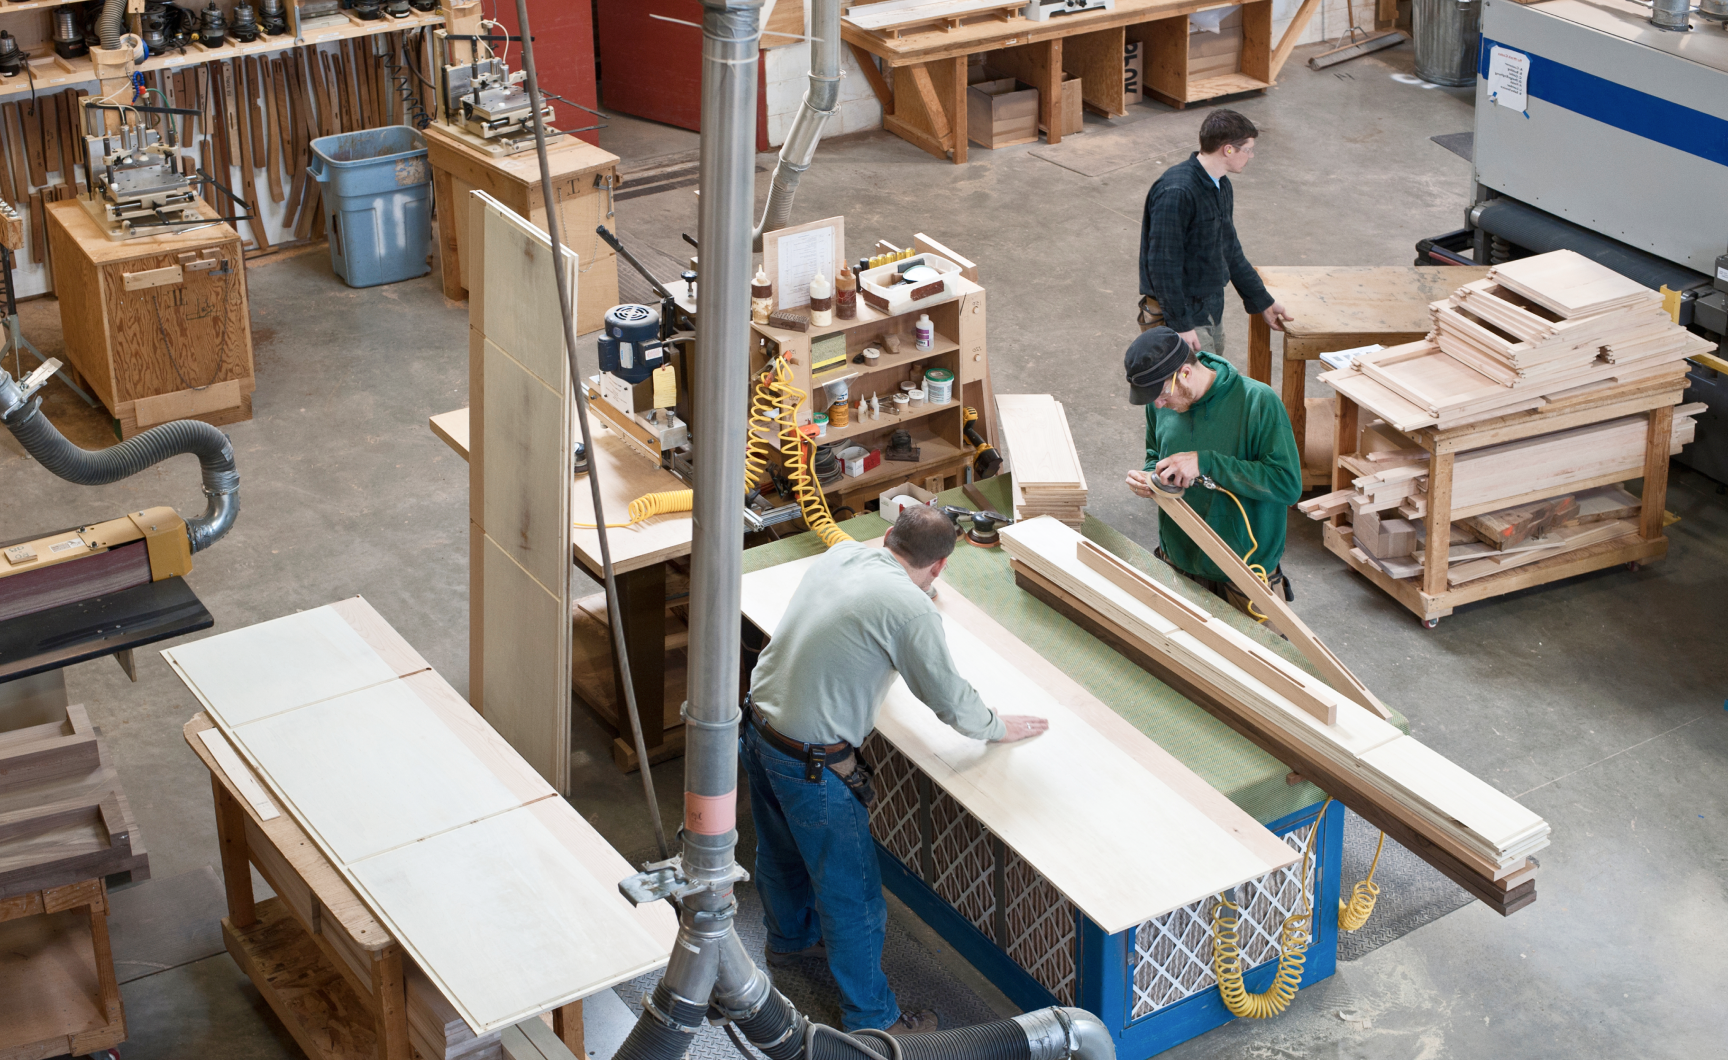 Hommes dans un petit atelier de fabrication avec des outils de travail du bois.